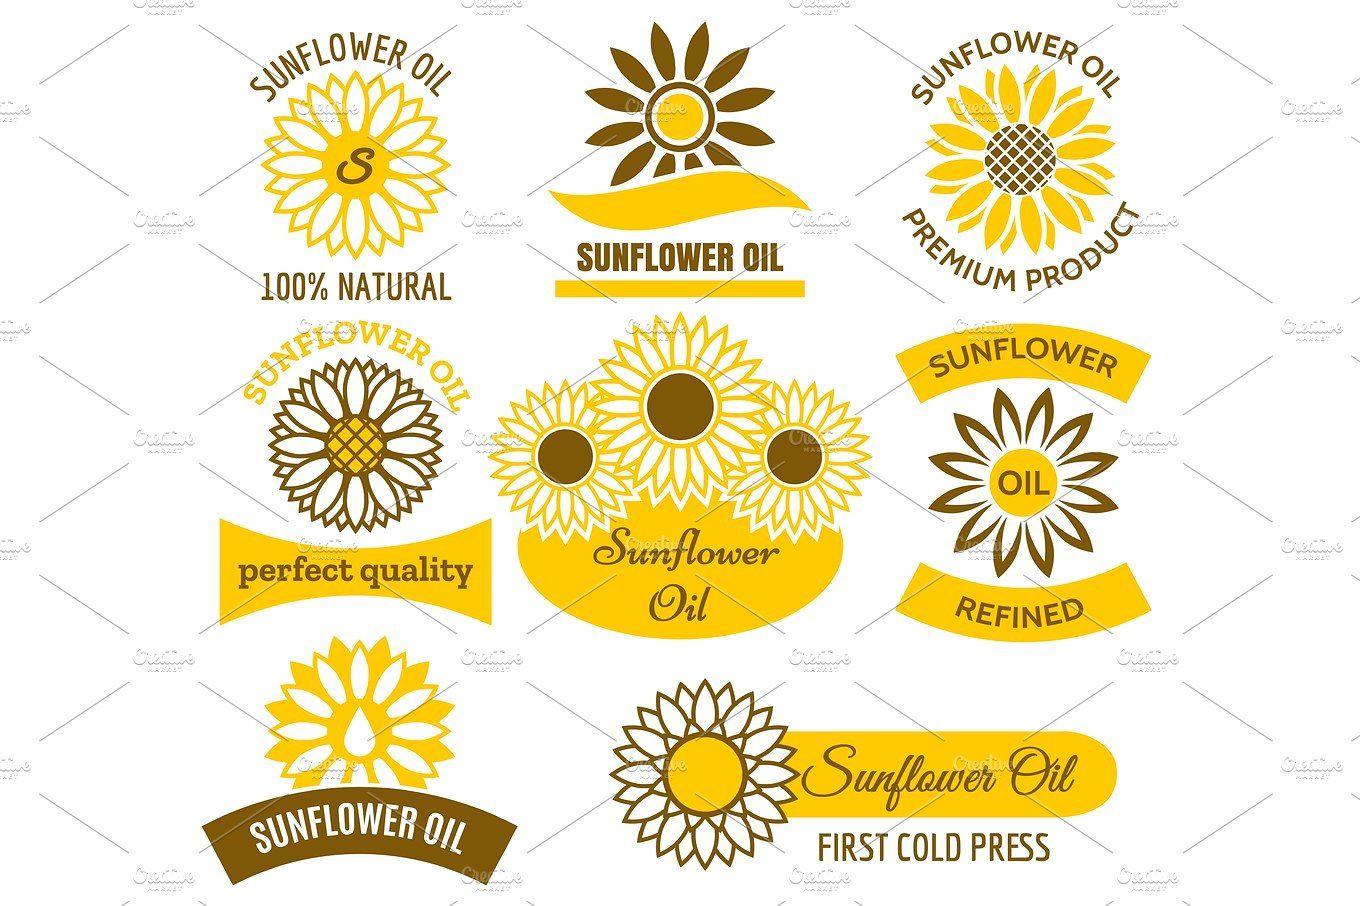 Sunflower Logo - Sunflower oil logo set ~ Illustrations ~ Creative Market